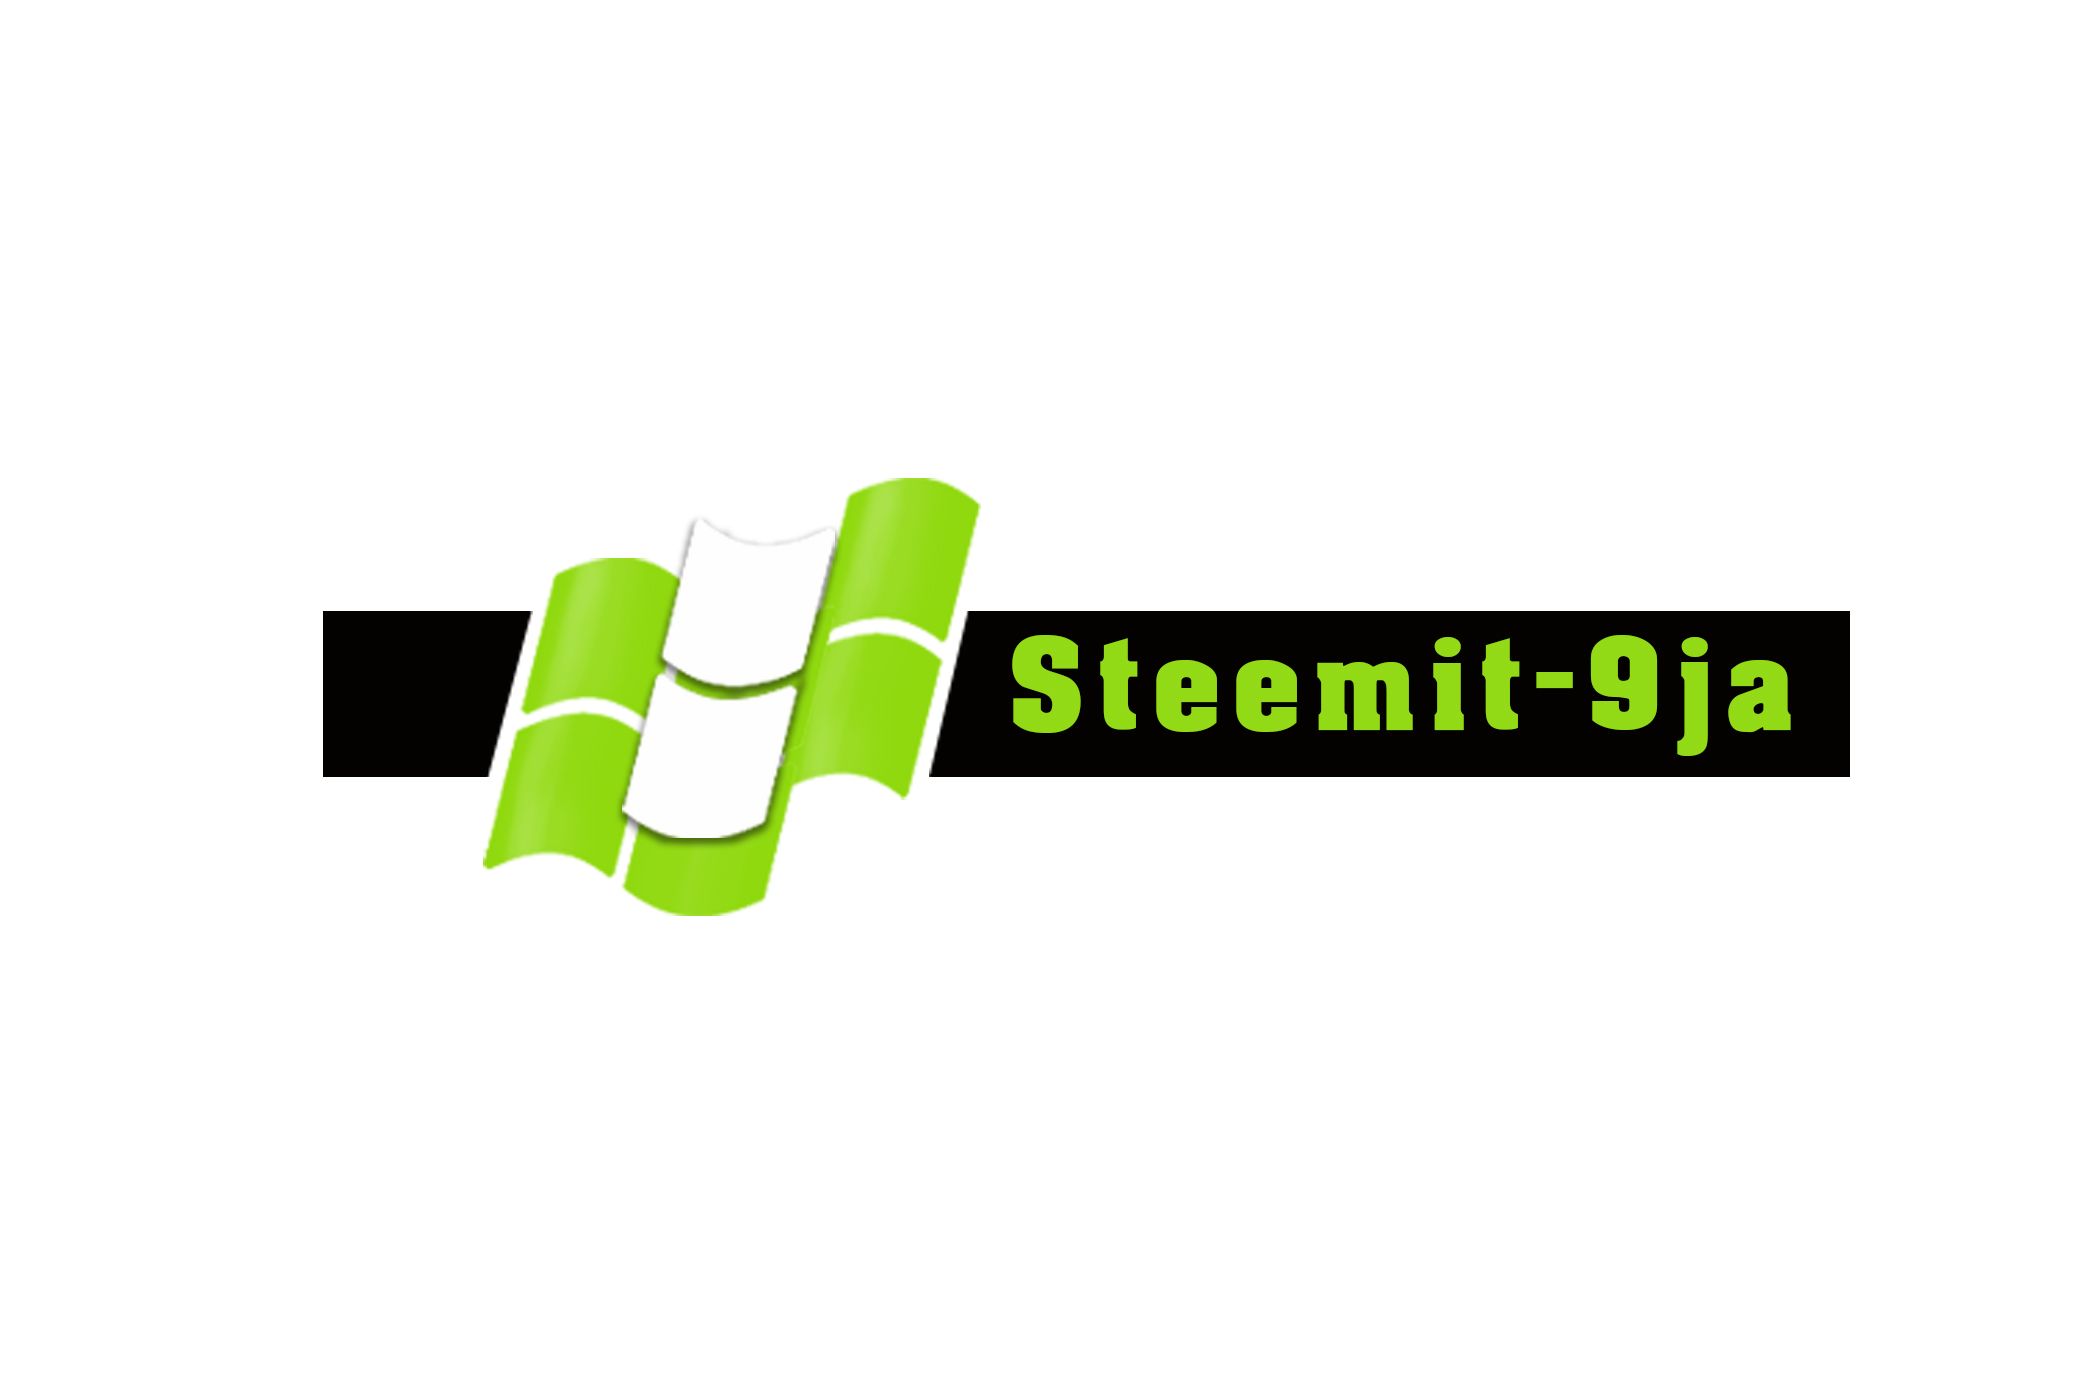 steemit9ja logo.jpg